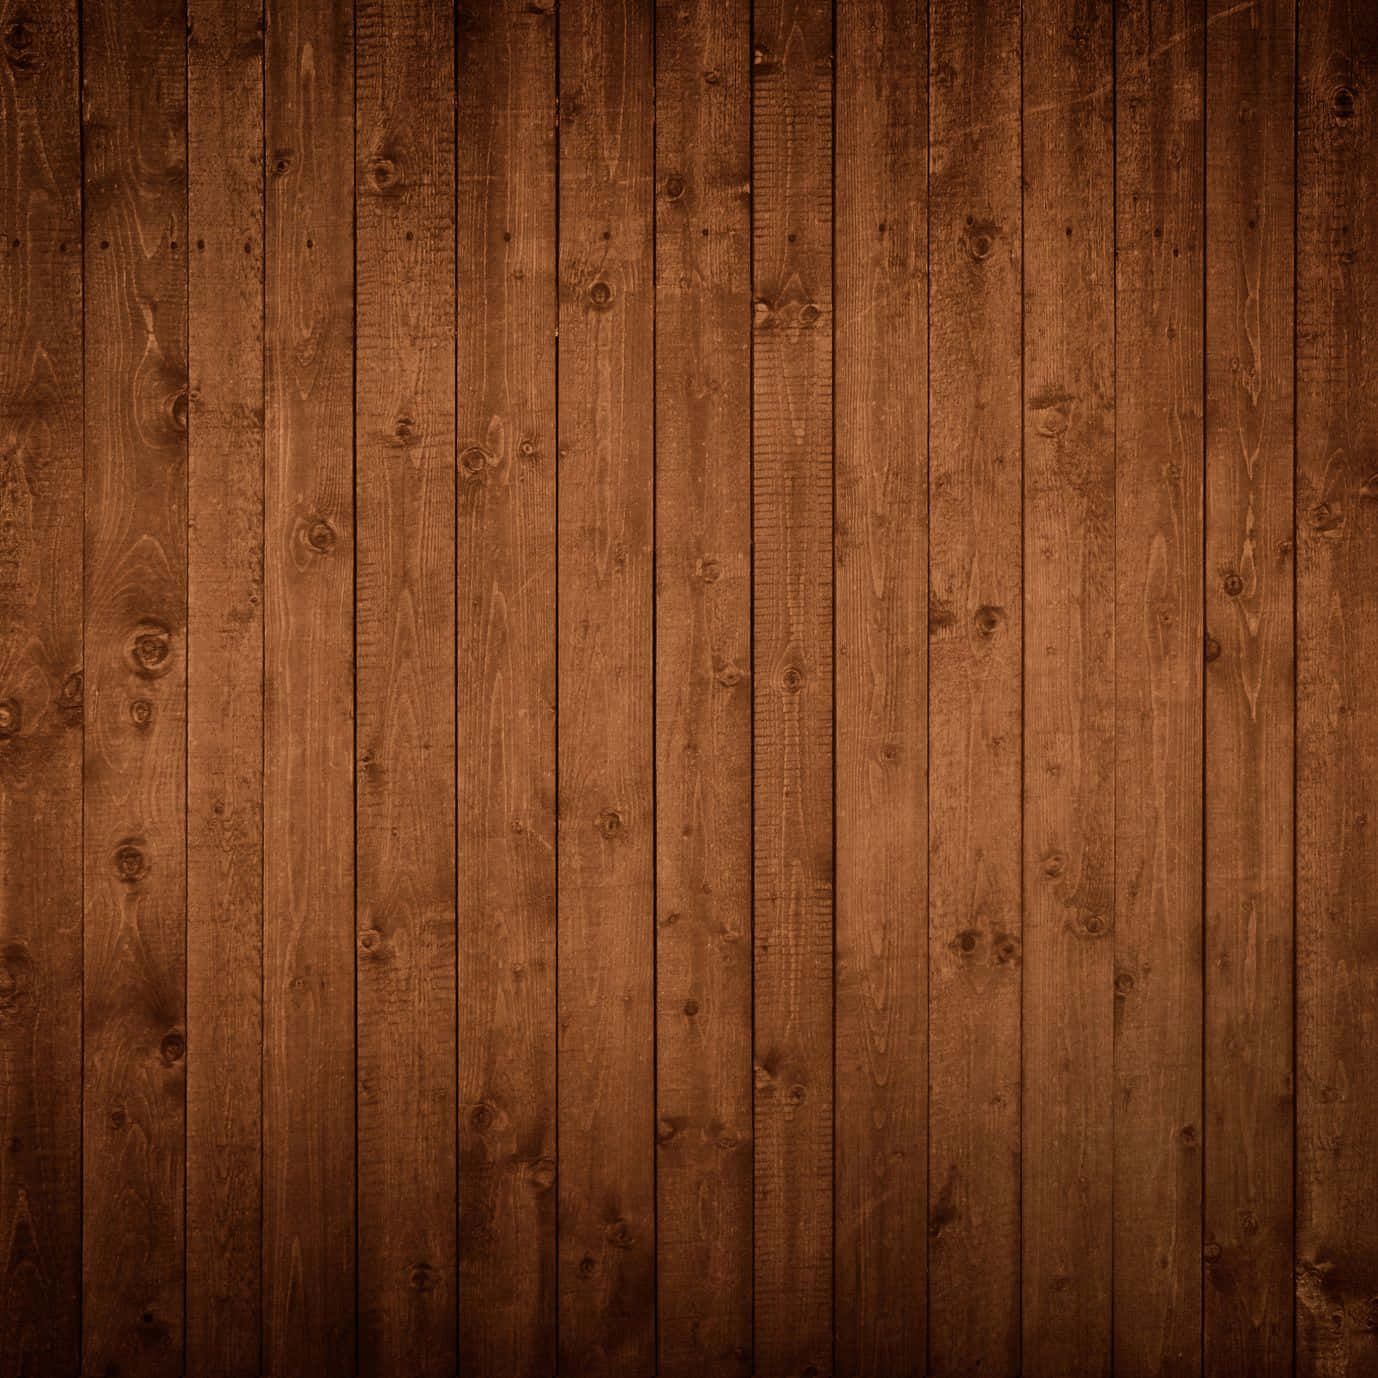 Không gian nội thất thật tuyệt vời khi được trang trí bằng gỗ đen sang trọng và đẳng cấp. Đặc biệt, gỗ đen có khả năng tạo nên không gian huyền bí nhưng không kém phần ấm áp. Hãy xem hình ảnh liên quan để khám phá thêm về độ đẹp và tinh tế của gỗ đen.